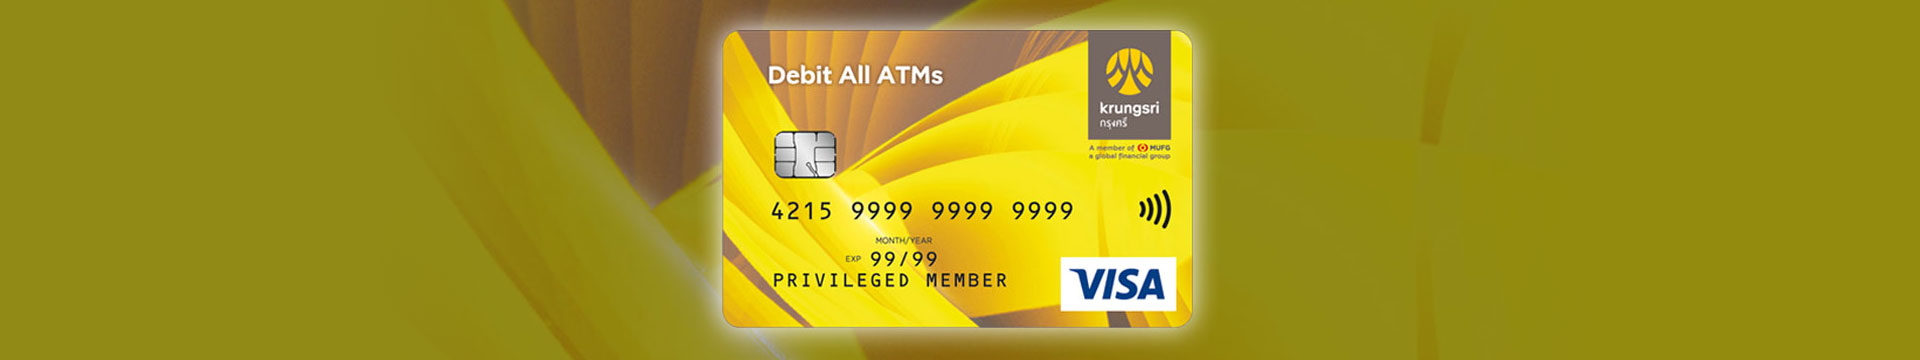 บัตรกรุงศรี เดบิต All ATMs